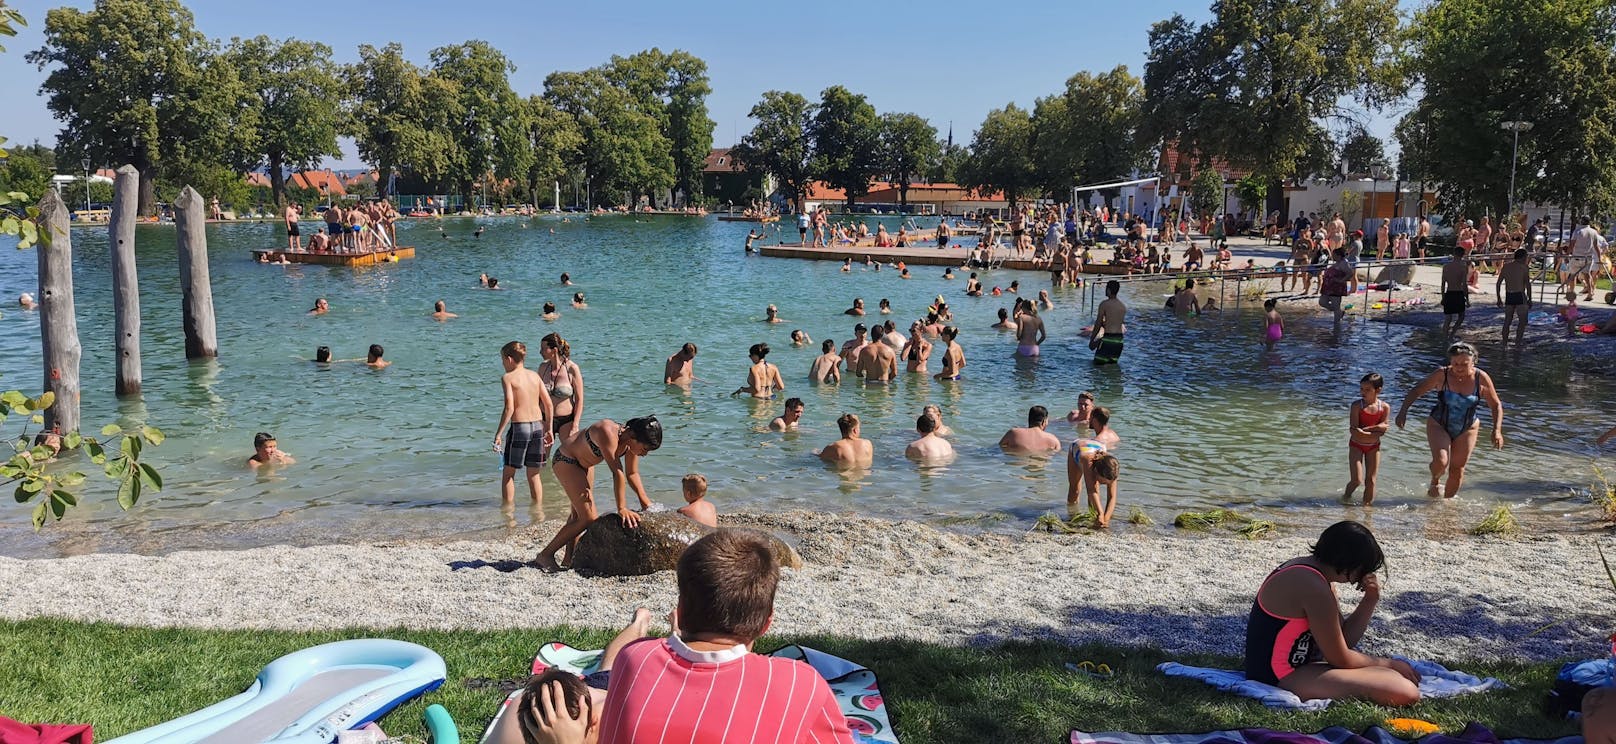 Das Freizeitareal mitten in der Stadt lockt schon bei den ersten Sonnenstrahlen und wärmeren Temperaturen viele Besucherinnen und Besucher ins Bad.